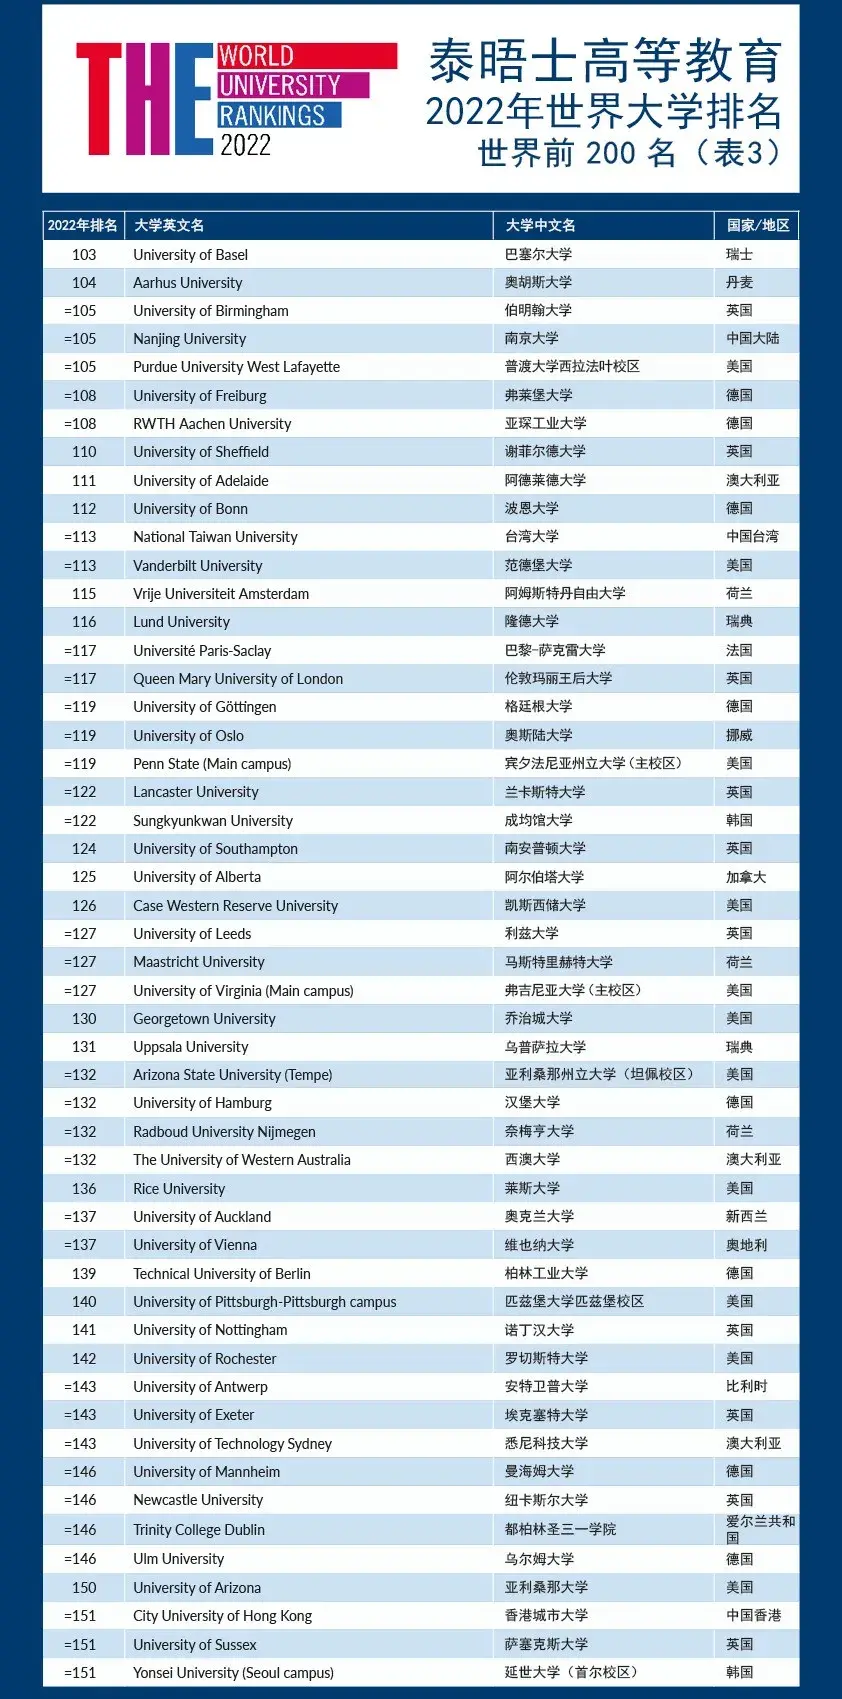 泰晤士2022世界大学排名发布,北大清华并列16